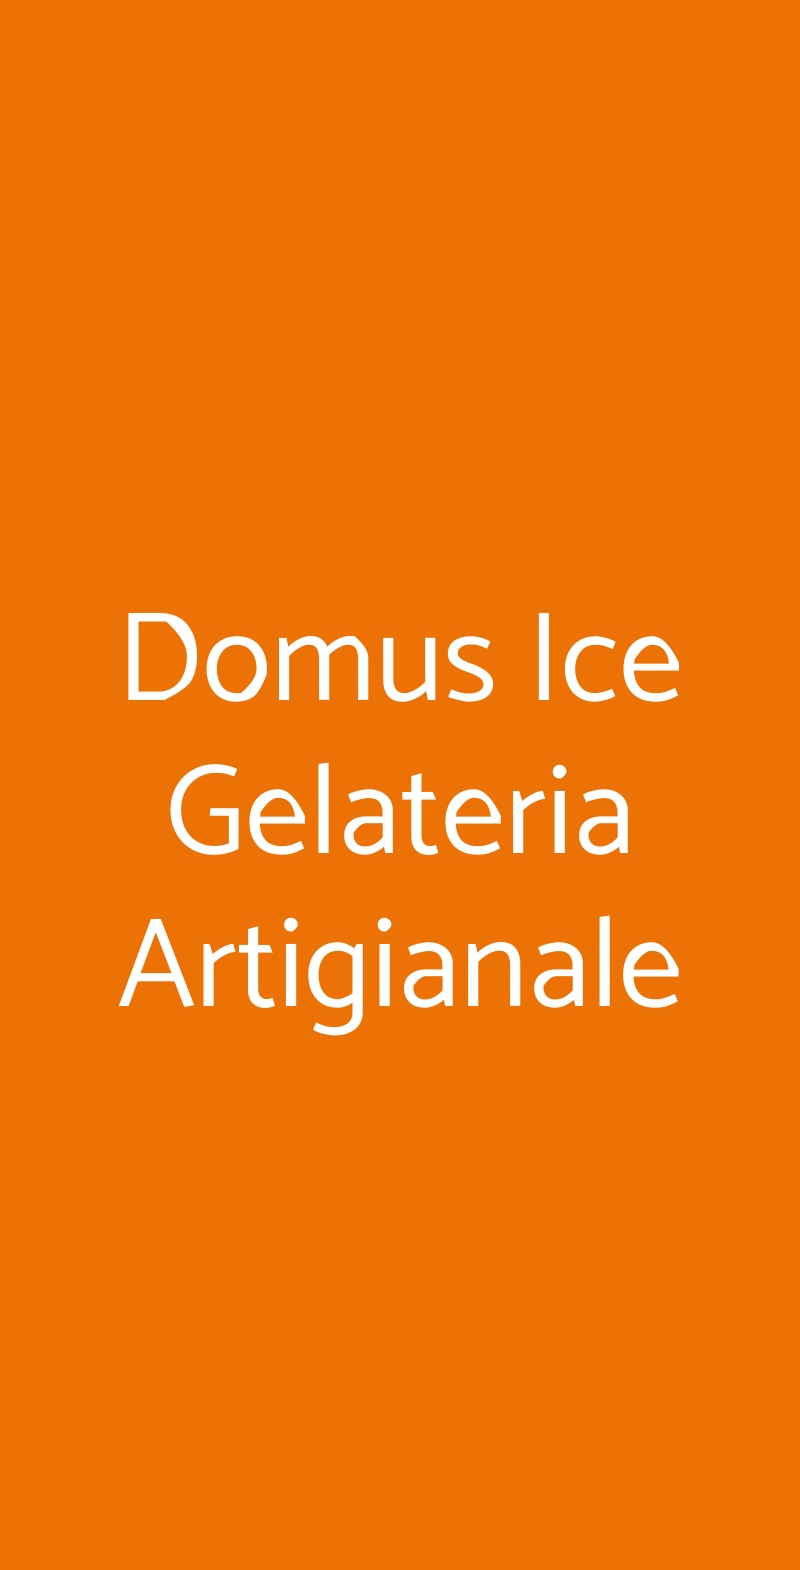 Domus Ice Gelateria Artigianale Roma menù 1 pagina